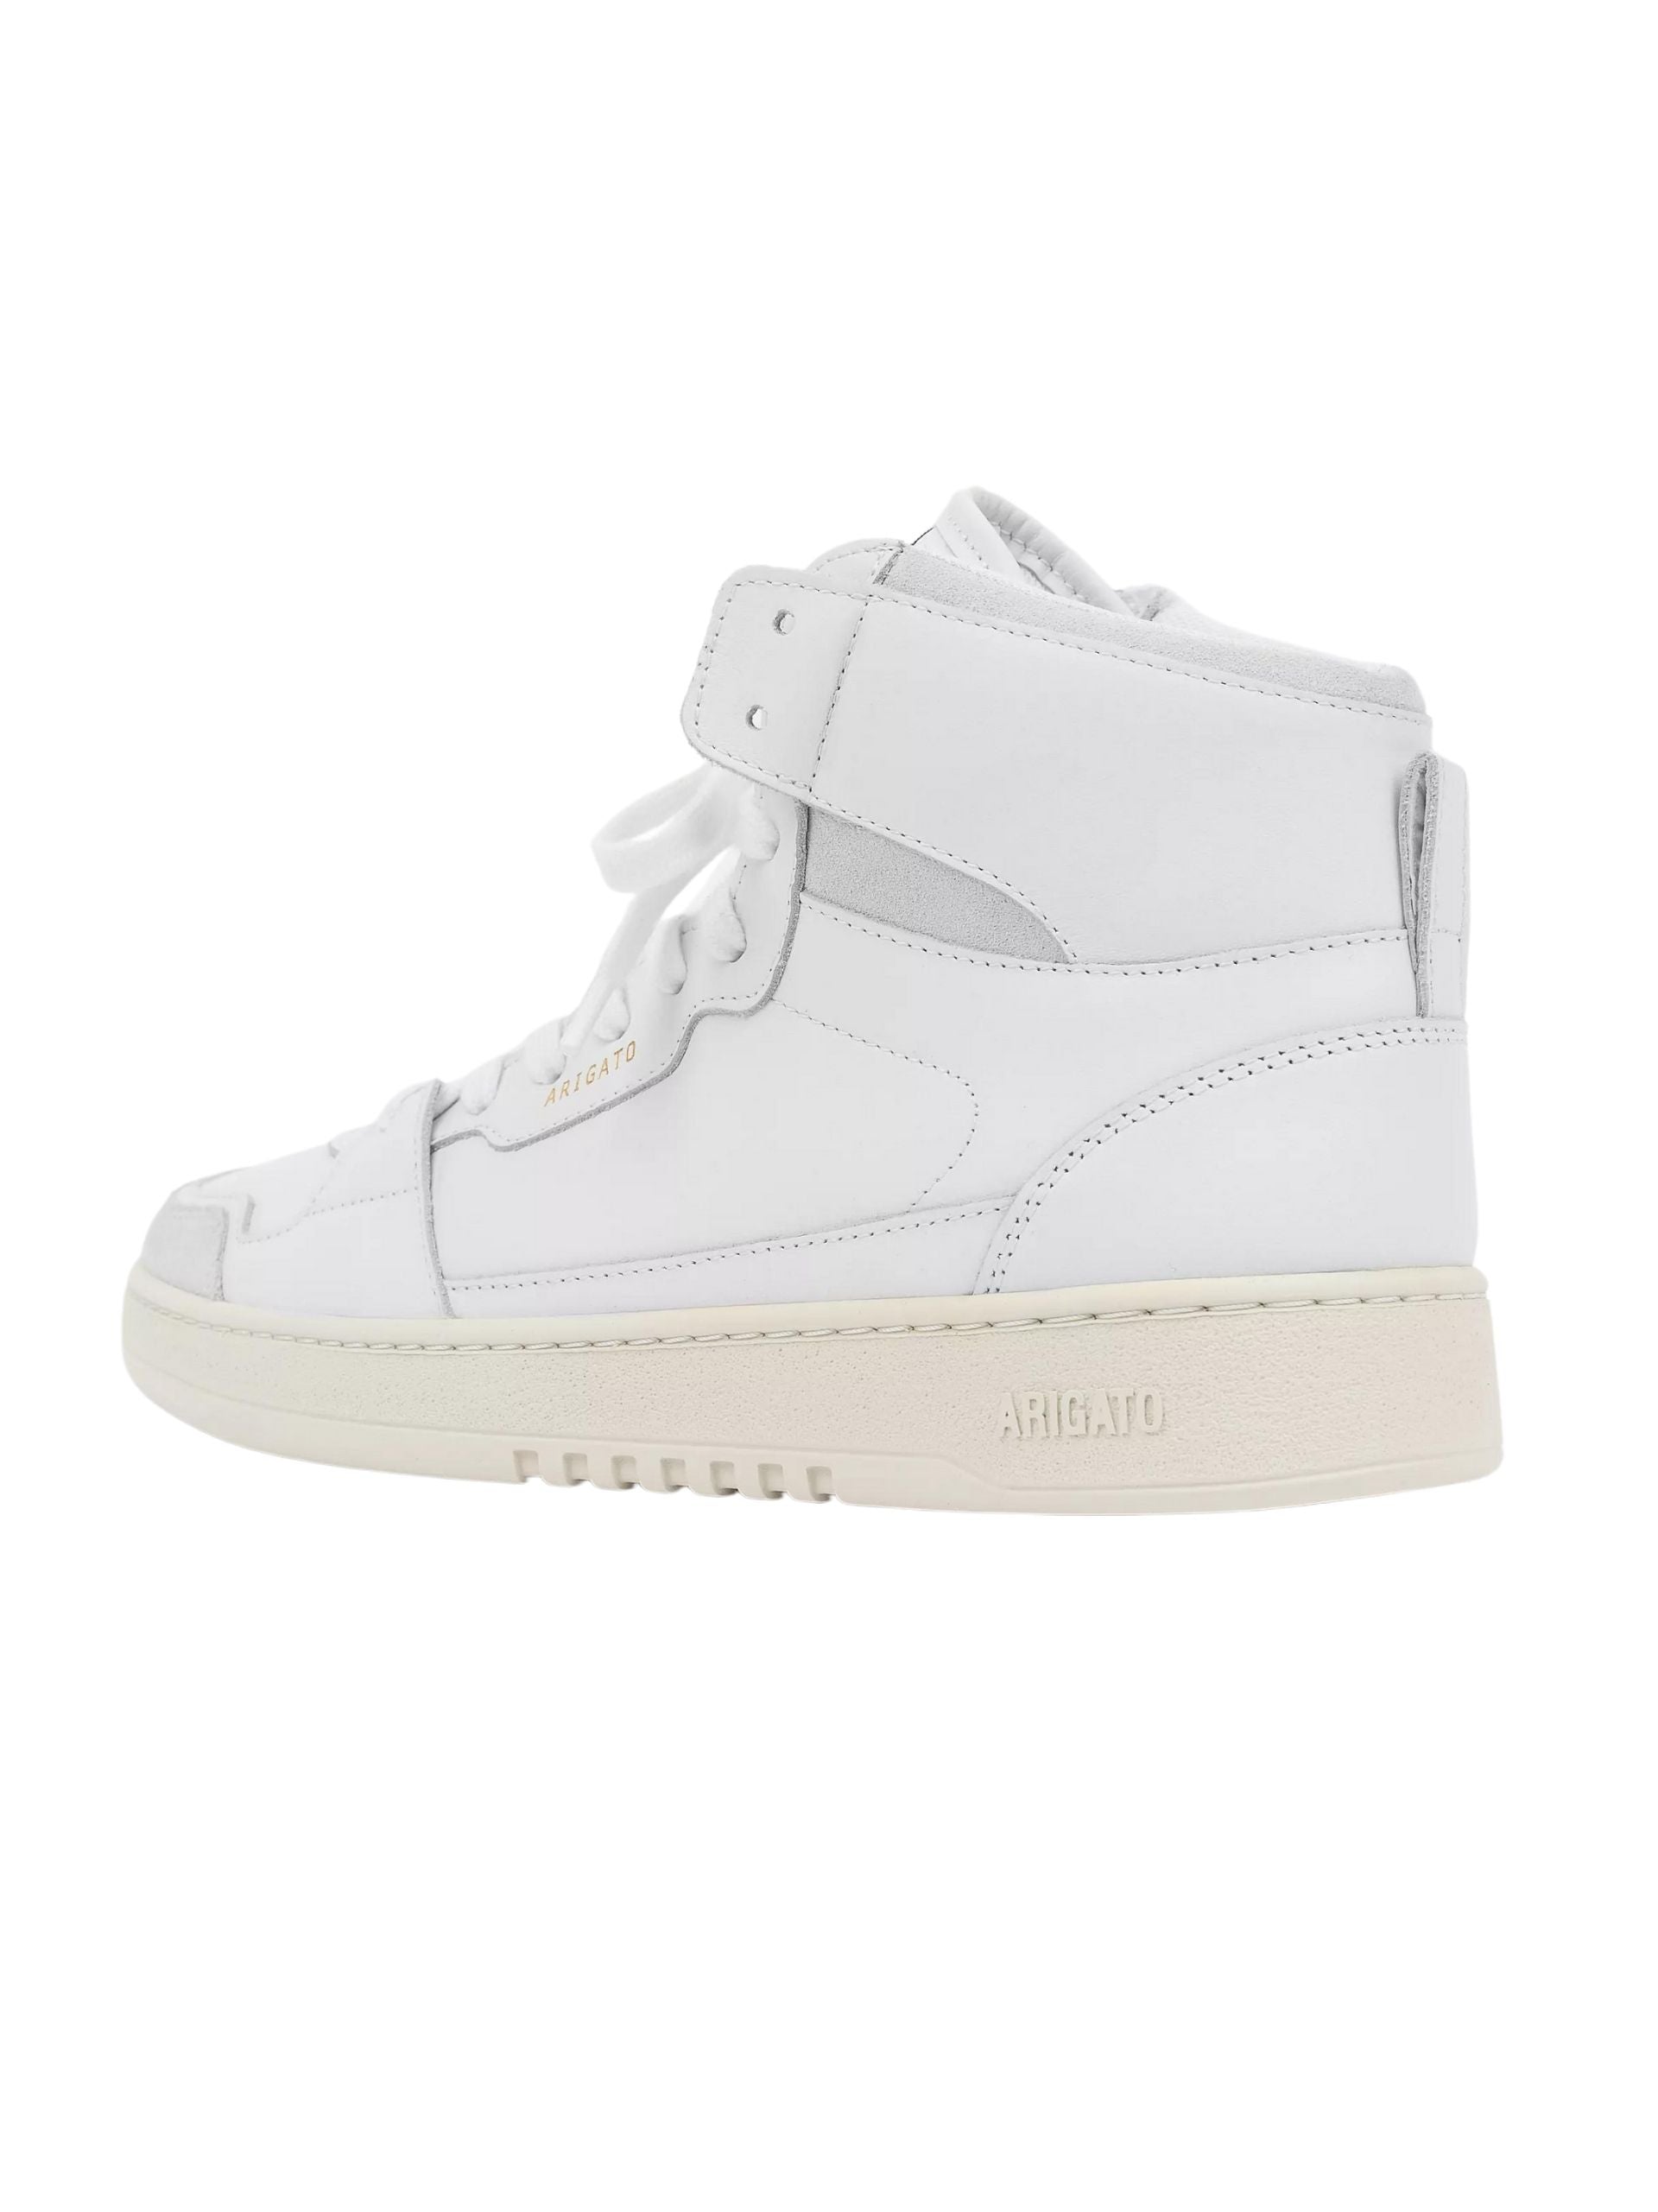 AXEL ARIGATO Dice Hi Sneaker / White - Seletti Concept Store